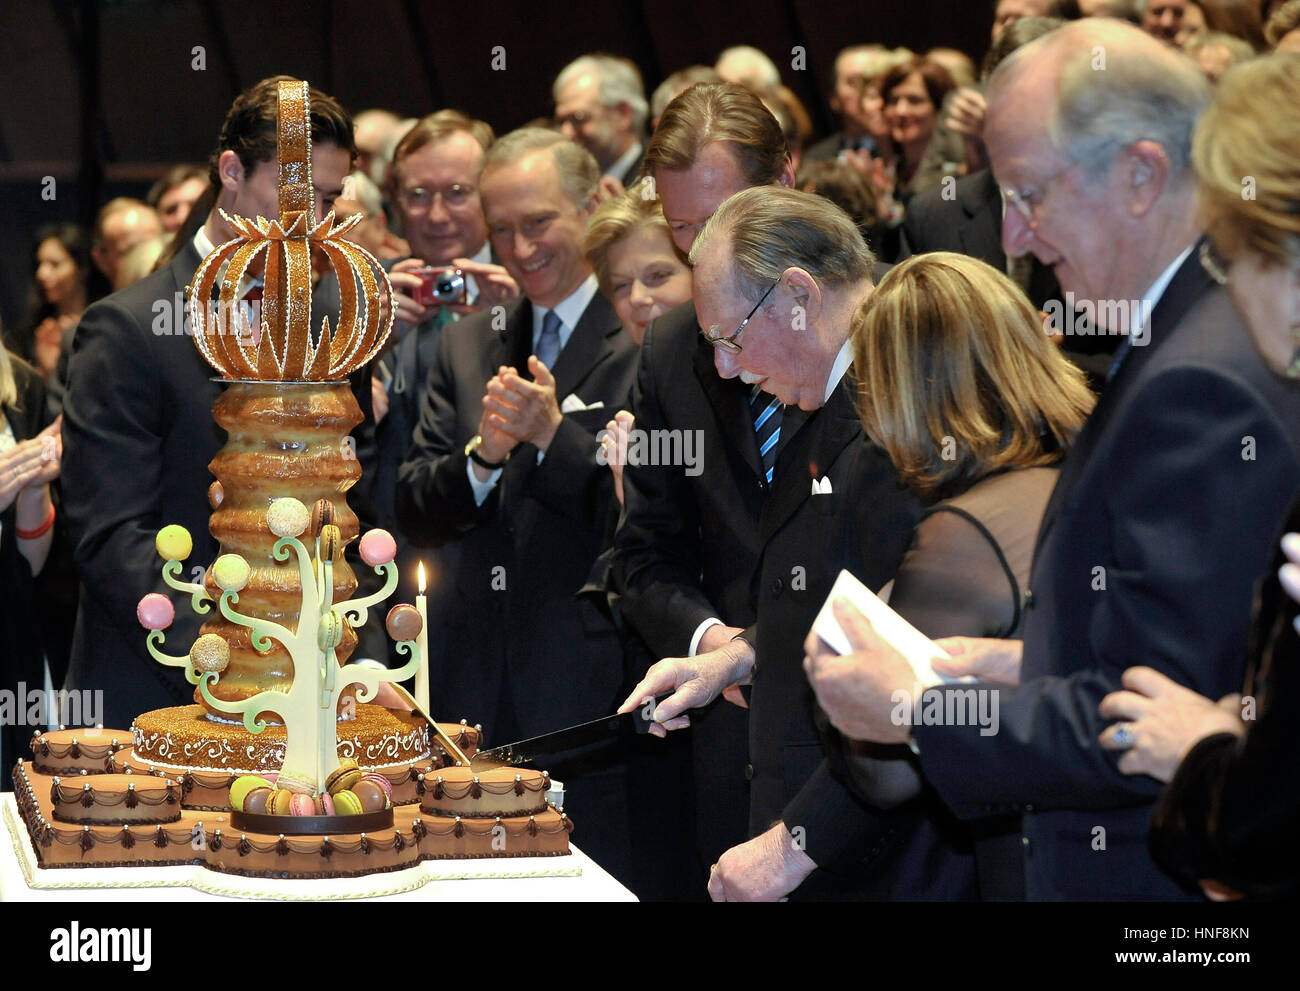 20110105 LUXEMBOURG, LUXEMBOURG : Luxembourg Grand-duc Jean coupe son gâteau après le concert pour le 90 anniversaire du Grand-duc Jean de Luxembourg de Luxe Banque D'Images